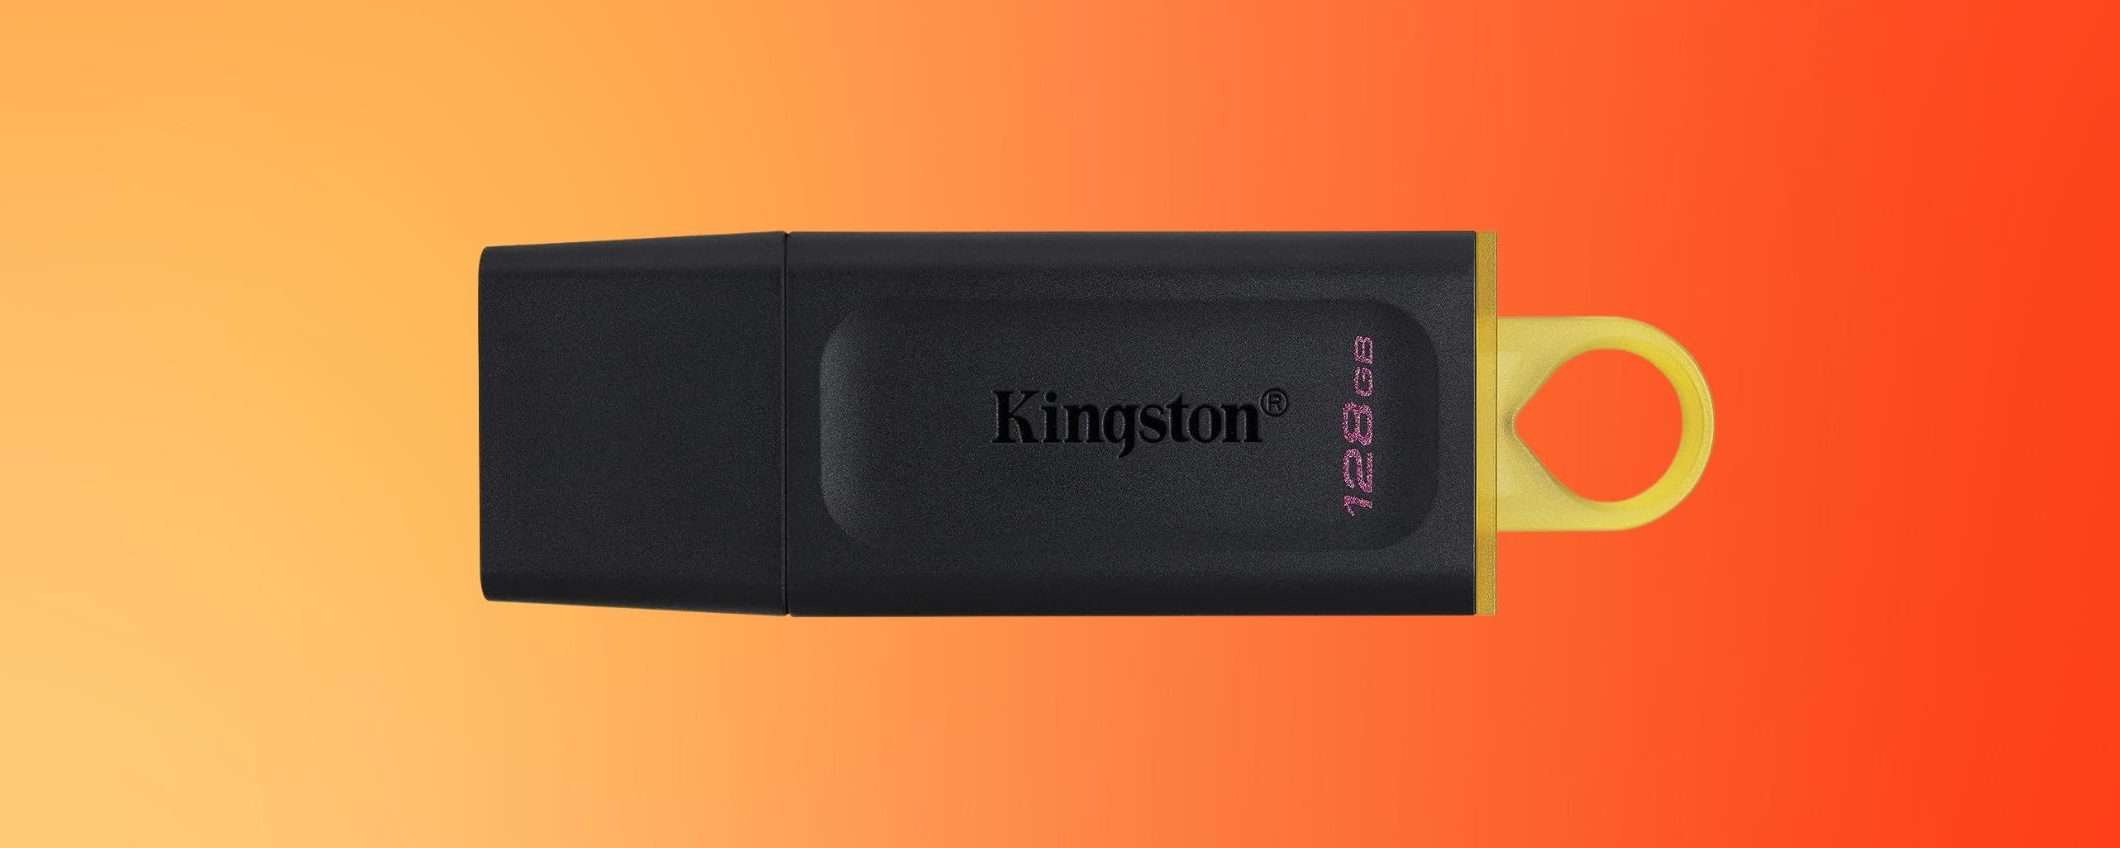 Chiavetta USB Kingston 128GB ad un SUPER PREZZO su Amazon (-60%)